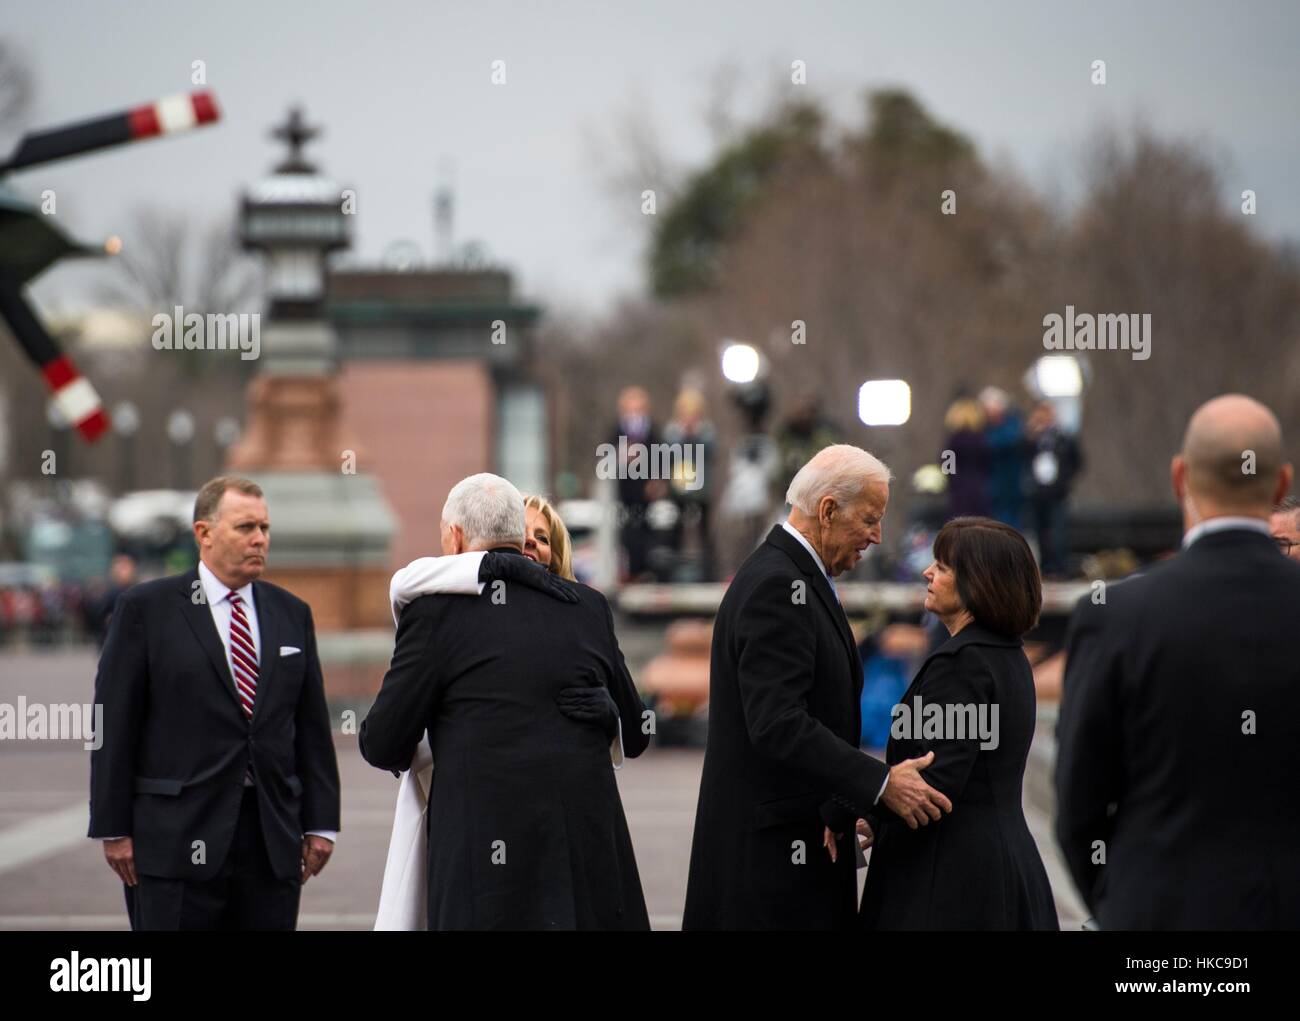 Vicepresidente de EE.UU. Mike Pence y Segunda Dama Karen Pence decir adiós al ex vicepresidente Joe Biden y su esposa Jill Biden durante la ceremonia de despedida en el 58º período de sesiones de inauguración presidencial el 20 de enero de 2017 en Washington, DC. Foto de stock